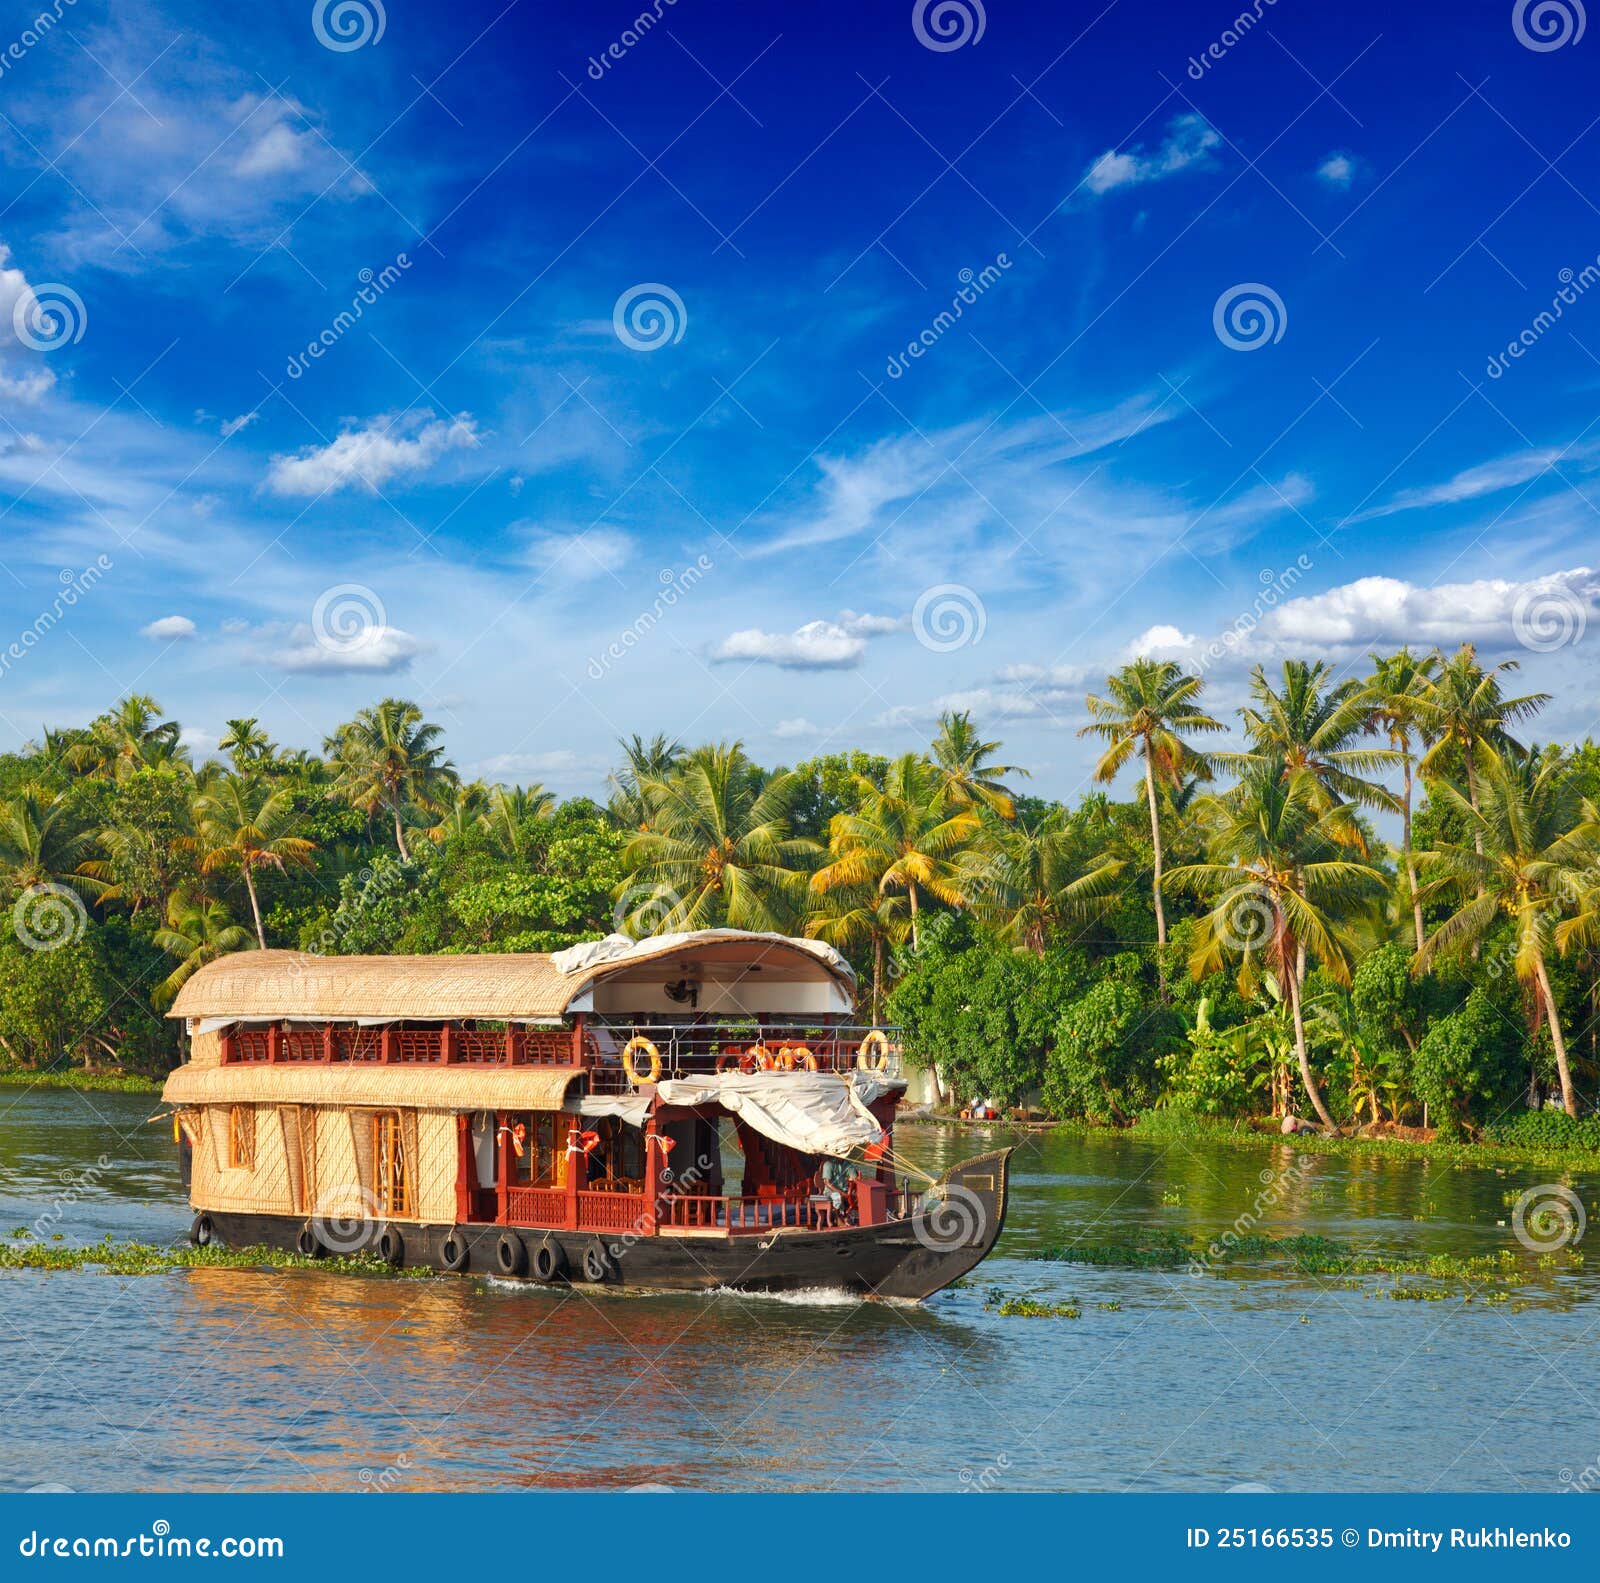 houseboat on kerala backwaters, india